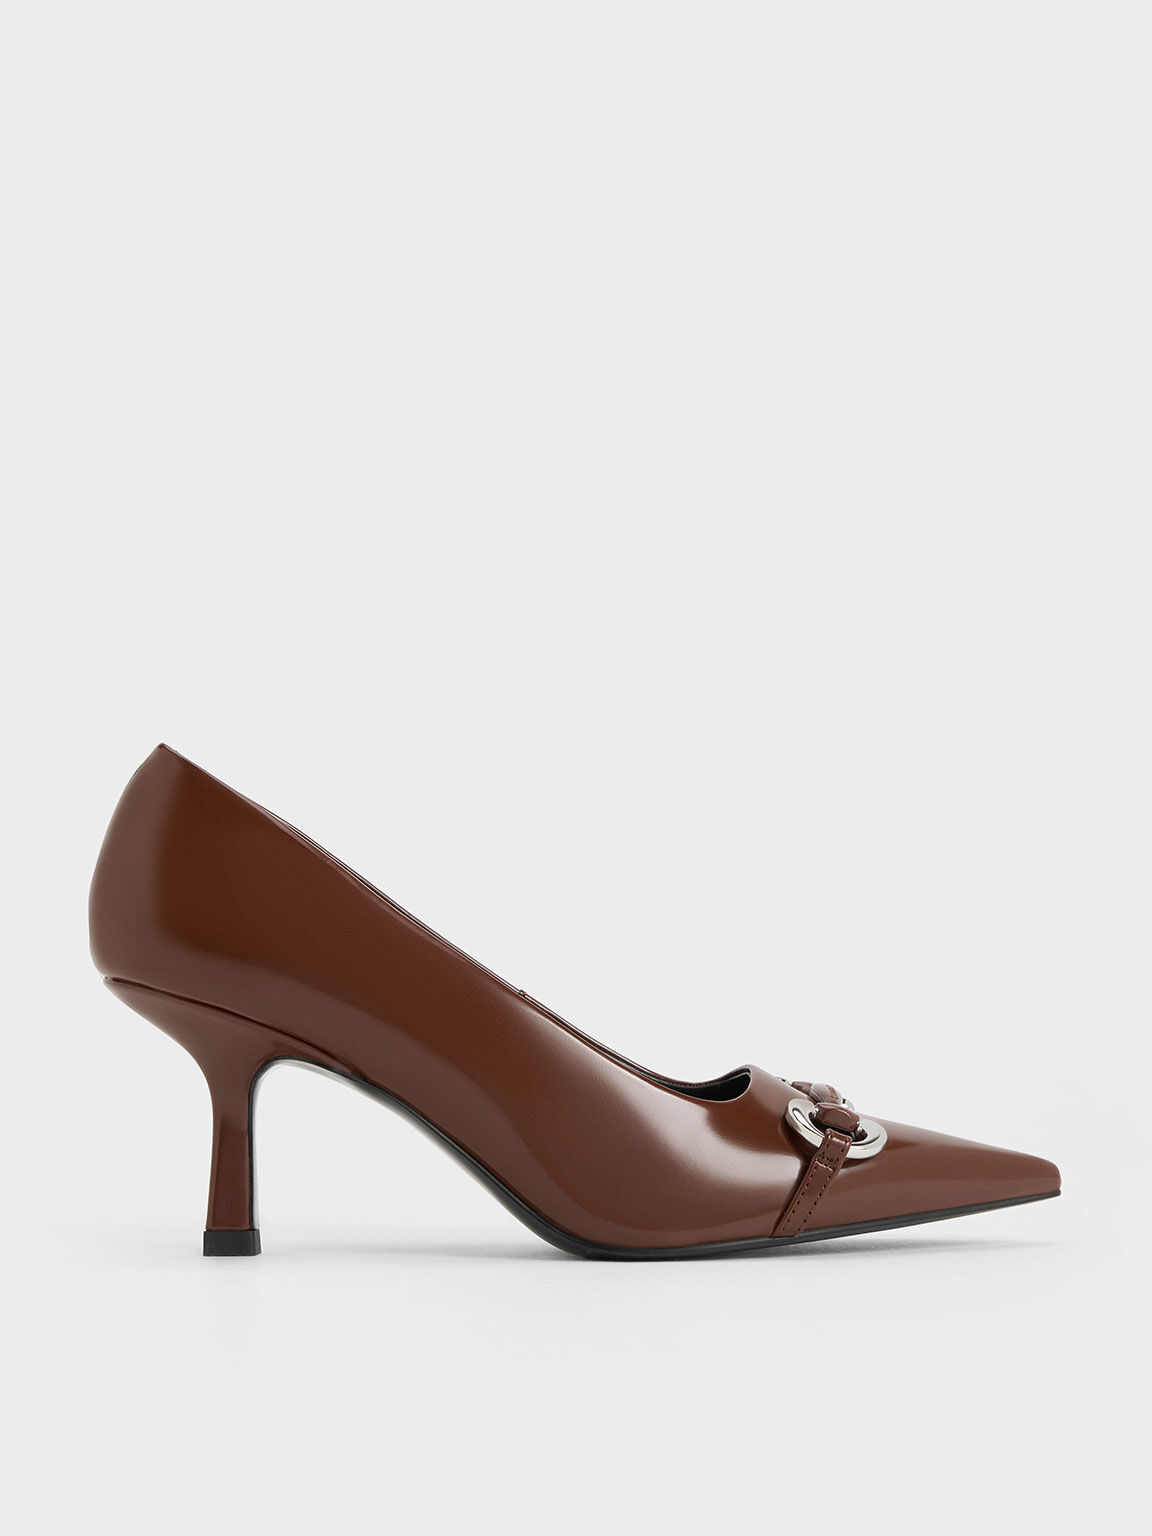 Buy Misto Women Brown Solid Block Heels at Amazon.in